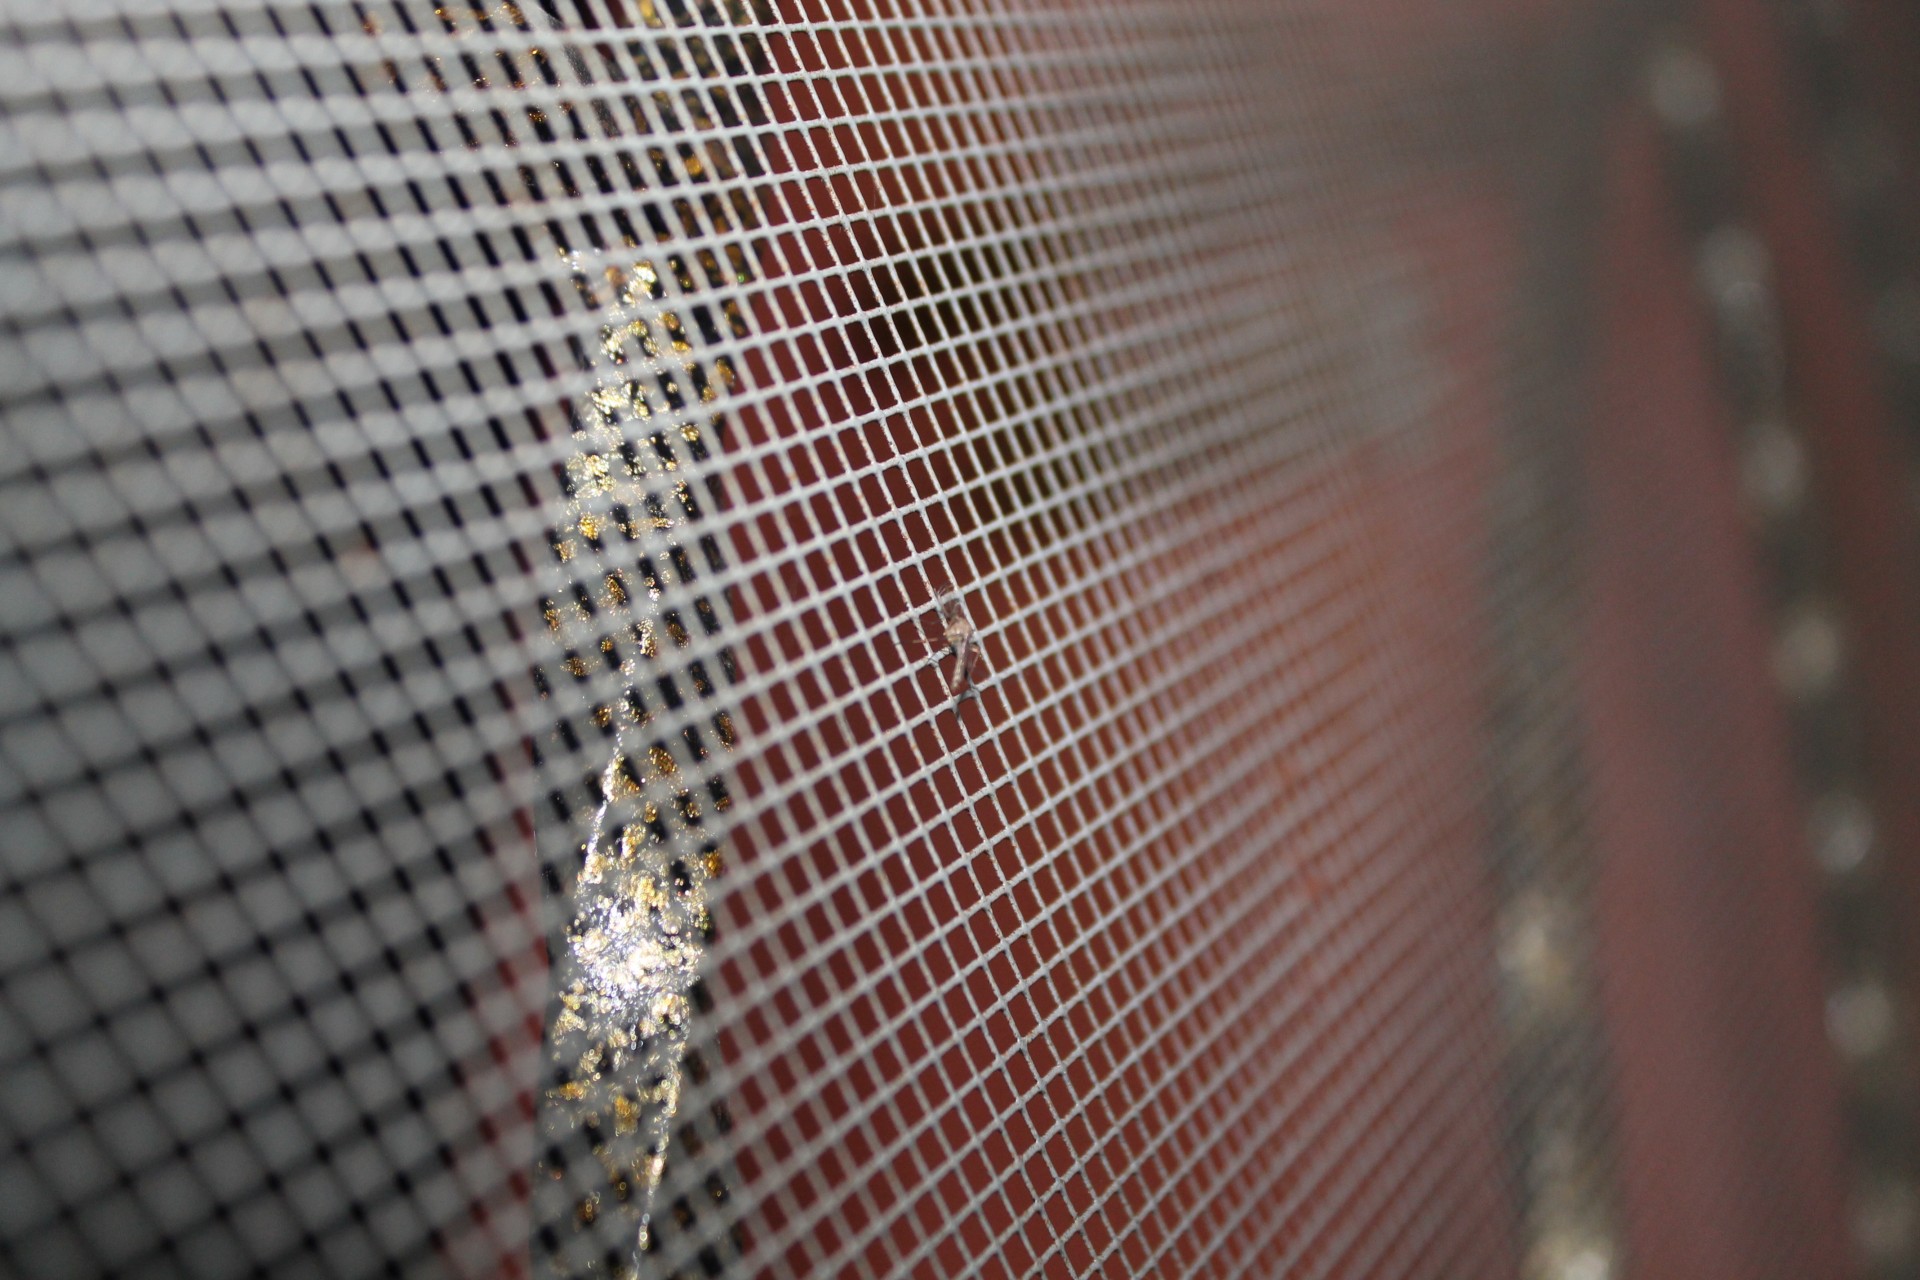 mosquito trap iron net free photo